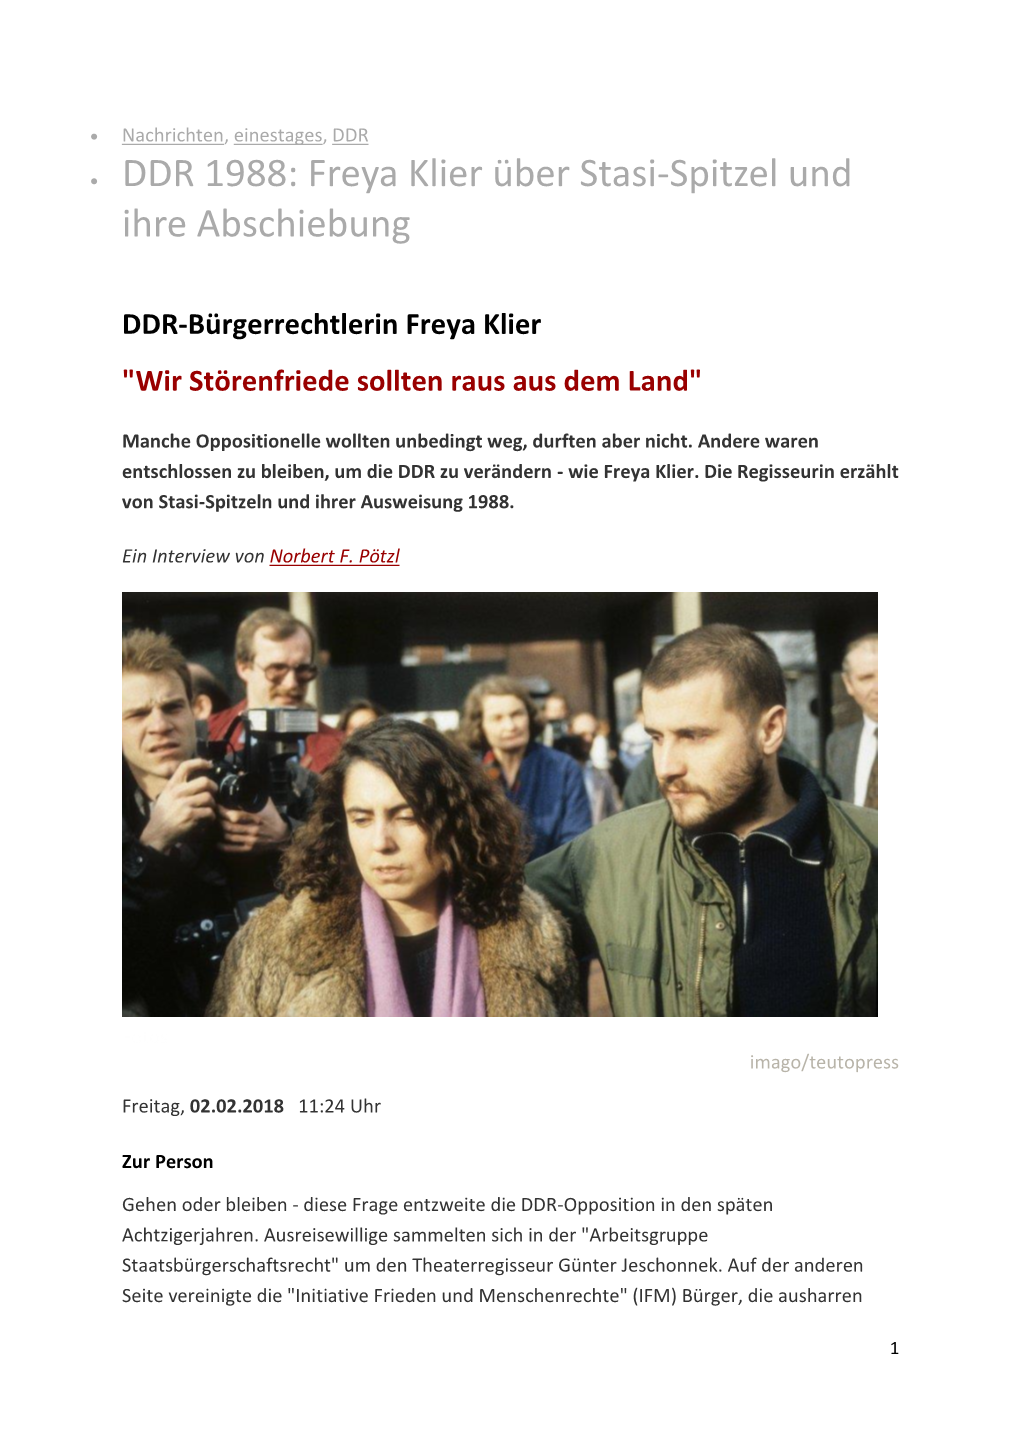 • DDR 1988: Freya Klier Über Stasi-Spitzel Und Ihre Abschiebung